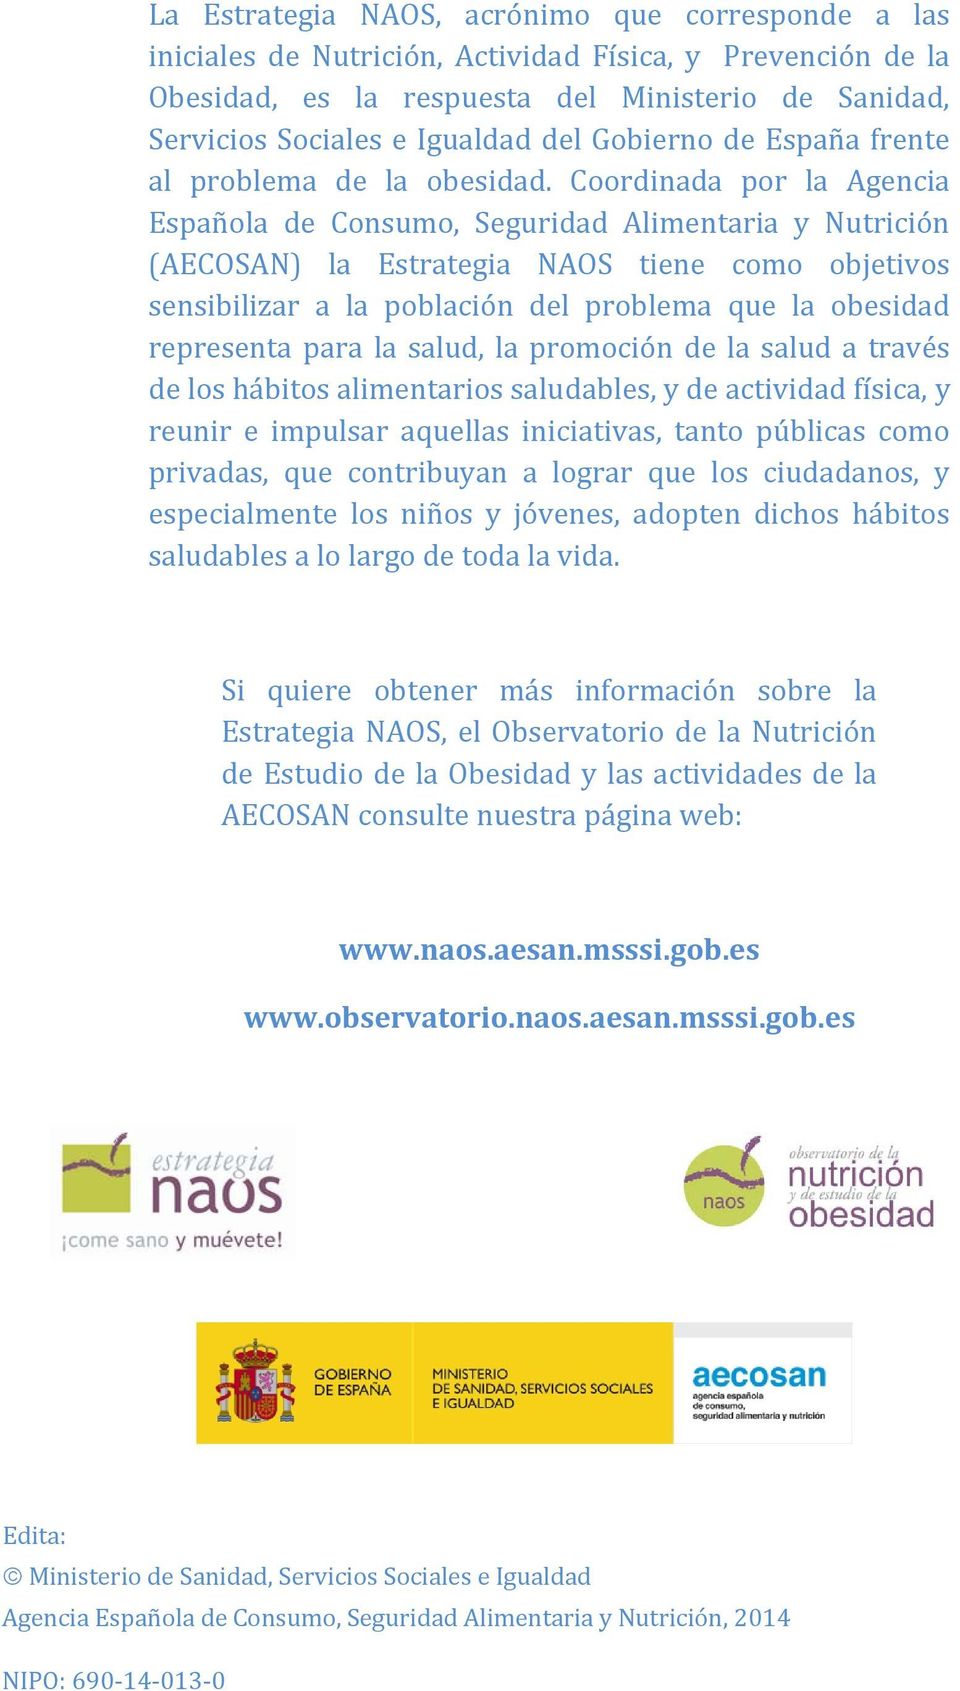 Coordinada por la Agencia Española de Consumo, Seguridad Alimentaria y Nutrición (AECOSAN) la Estrategia NAOS tiene como objetivos sensibilizar a la población del problema que la obesidad representa